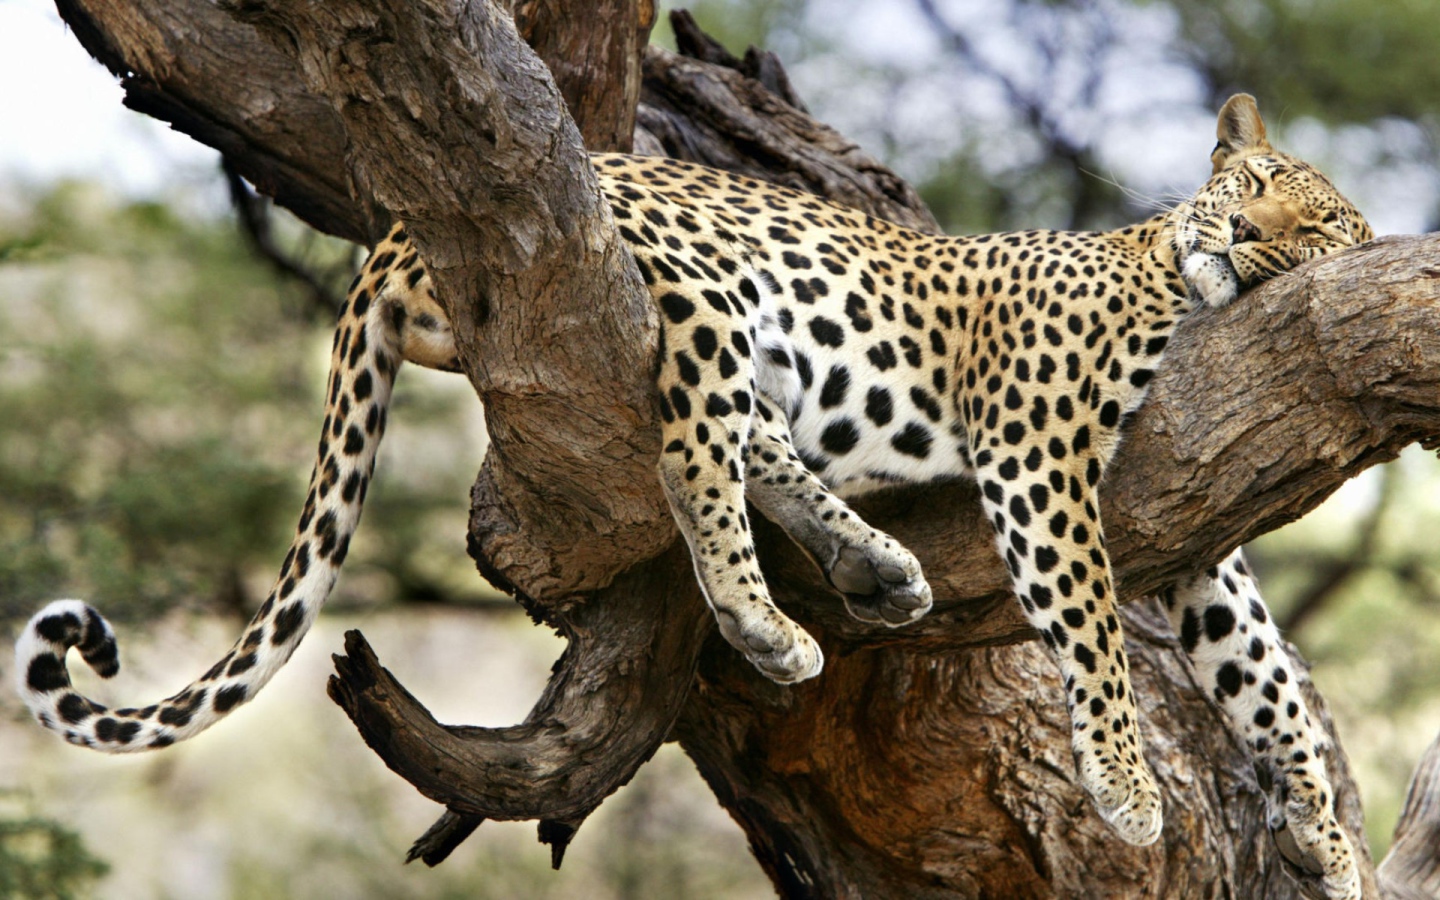 Леопард спит на дереве